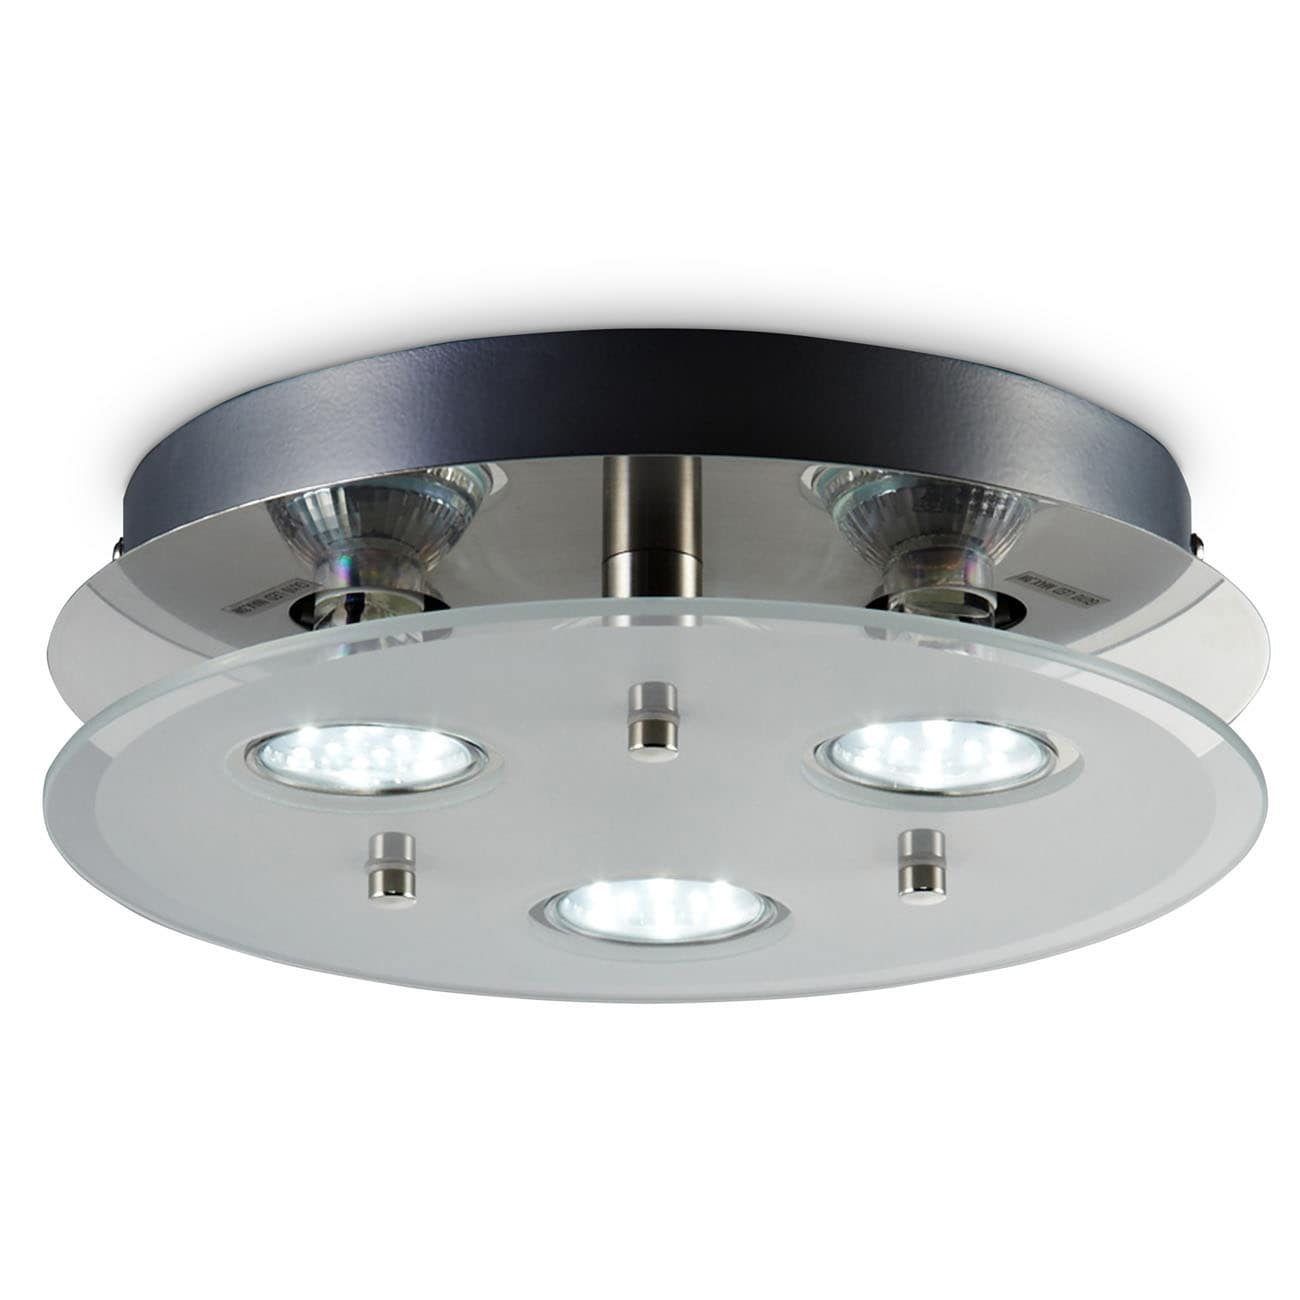 LED Deckenleuchte rund 25x7 cm - 3-flammig - moderne Deckenlampe Glas Metall GU10 9W 750lm warmweiß | Matt-Nickel - 1